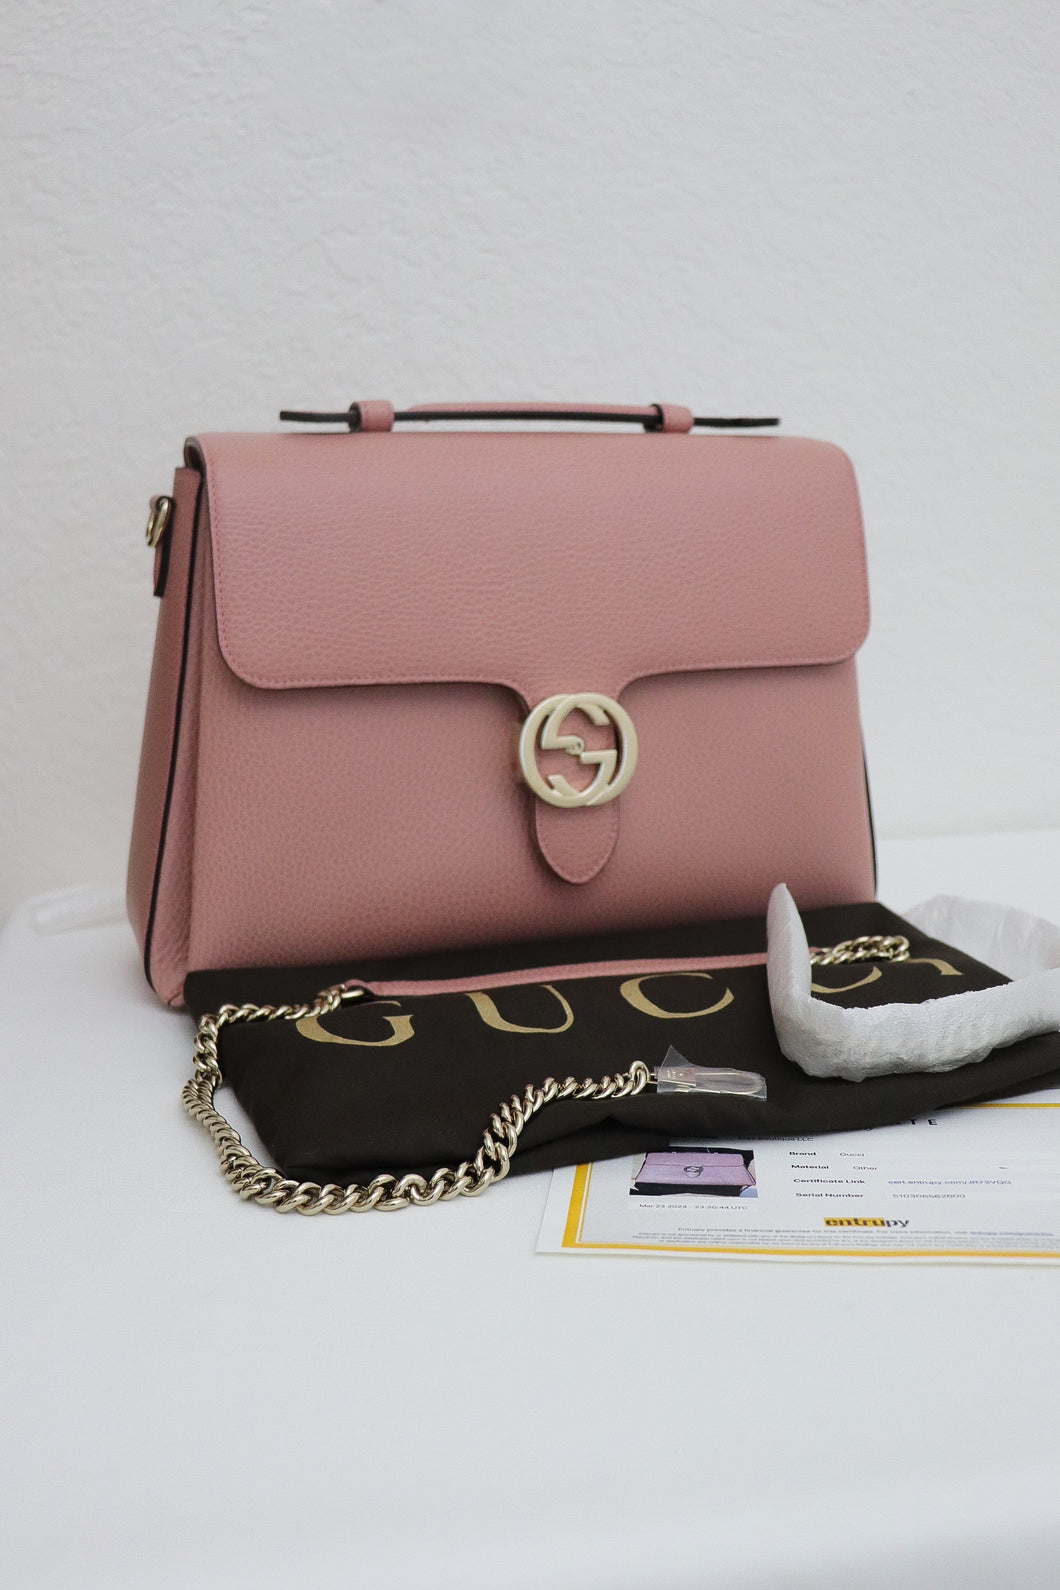 Gucci GG Medium Interlocking Calfskin Shoulder bag in pink - BRAND NEW